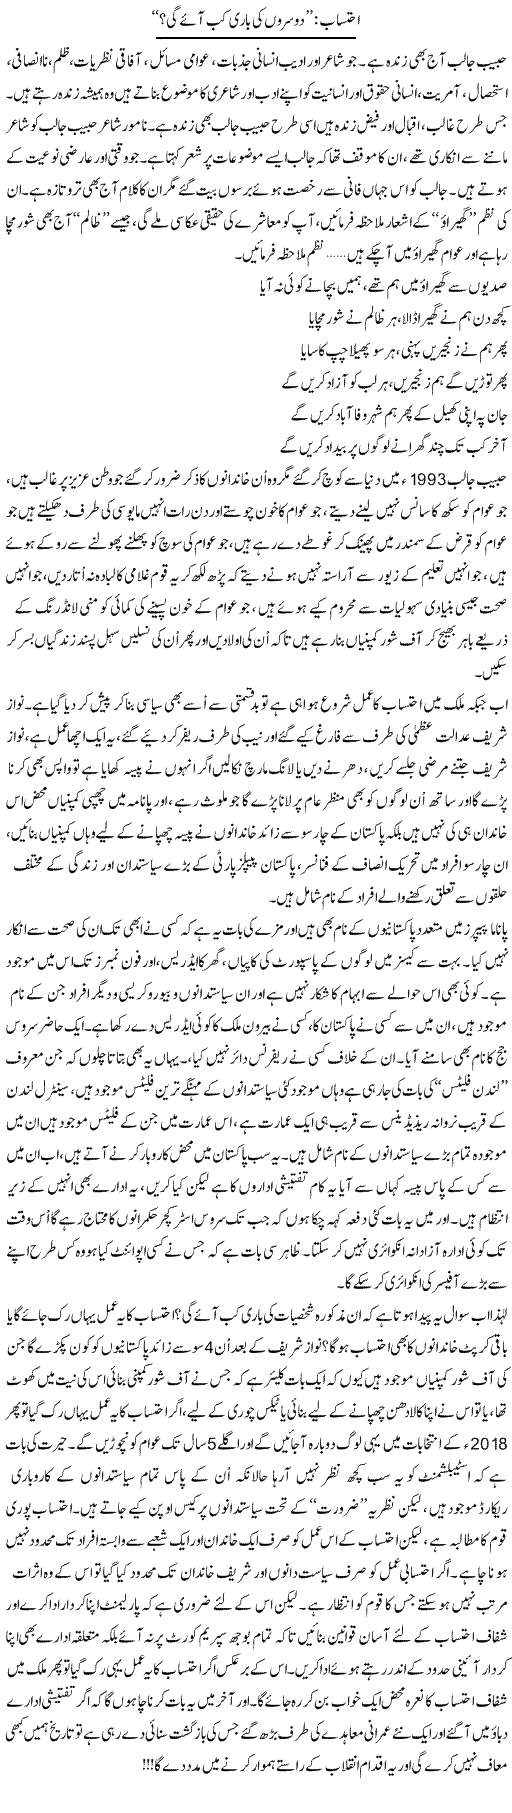 Ehtesab: Doosron Ki Baari Kab Aaye Gi | Ali Ahmad Dhillon | Daily Urdu Columns